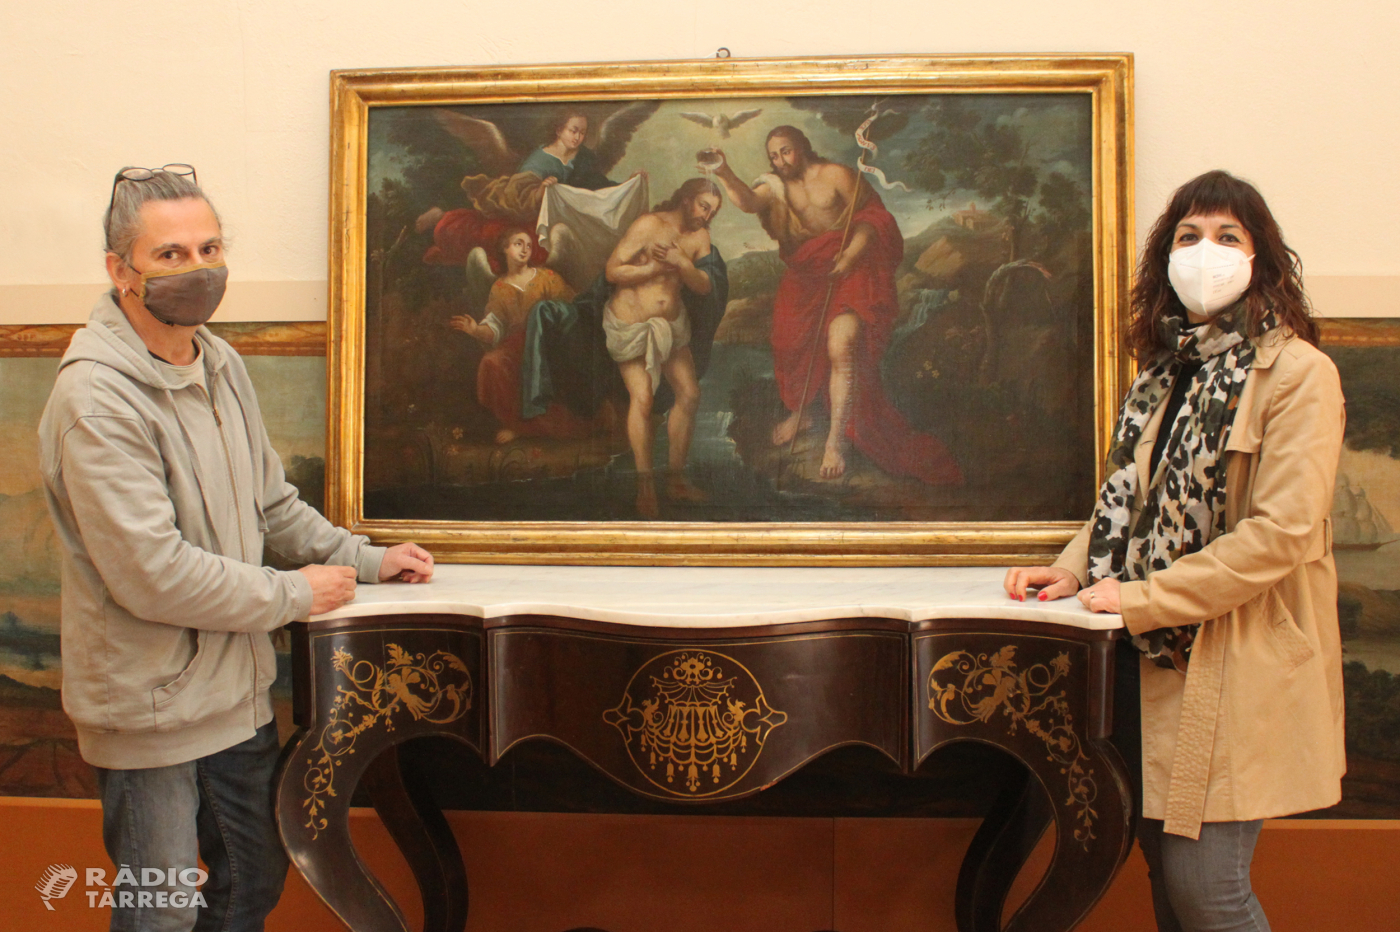 El Museu Tàrrega Urgell restaura dues pintures barroques provinents de la casa modernista de Cal Segarra